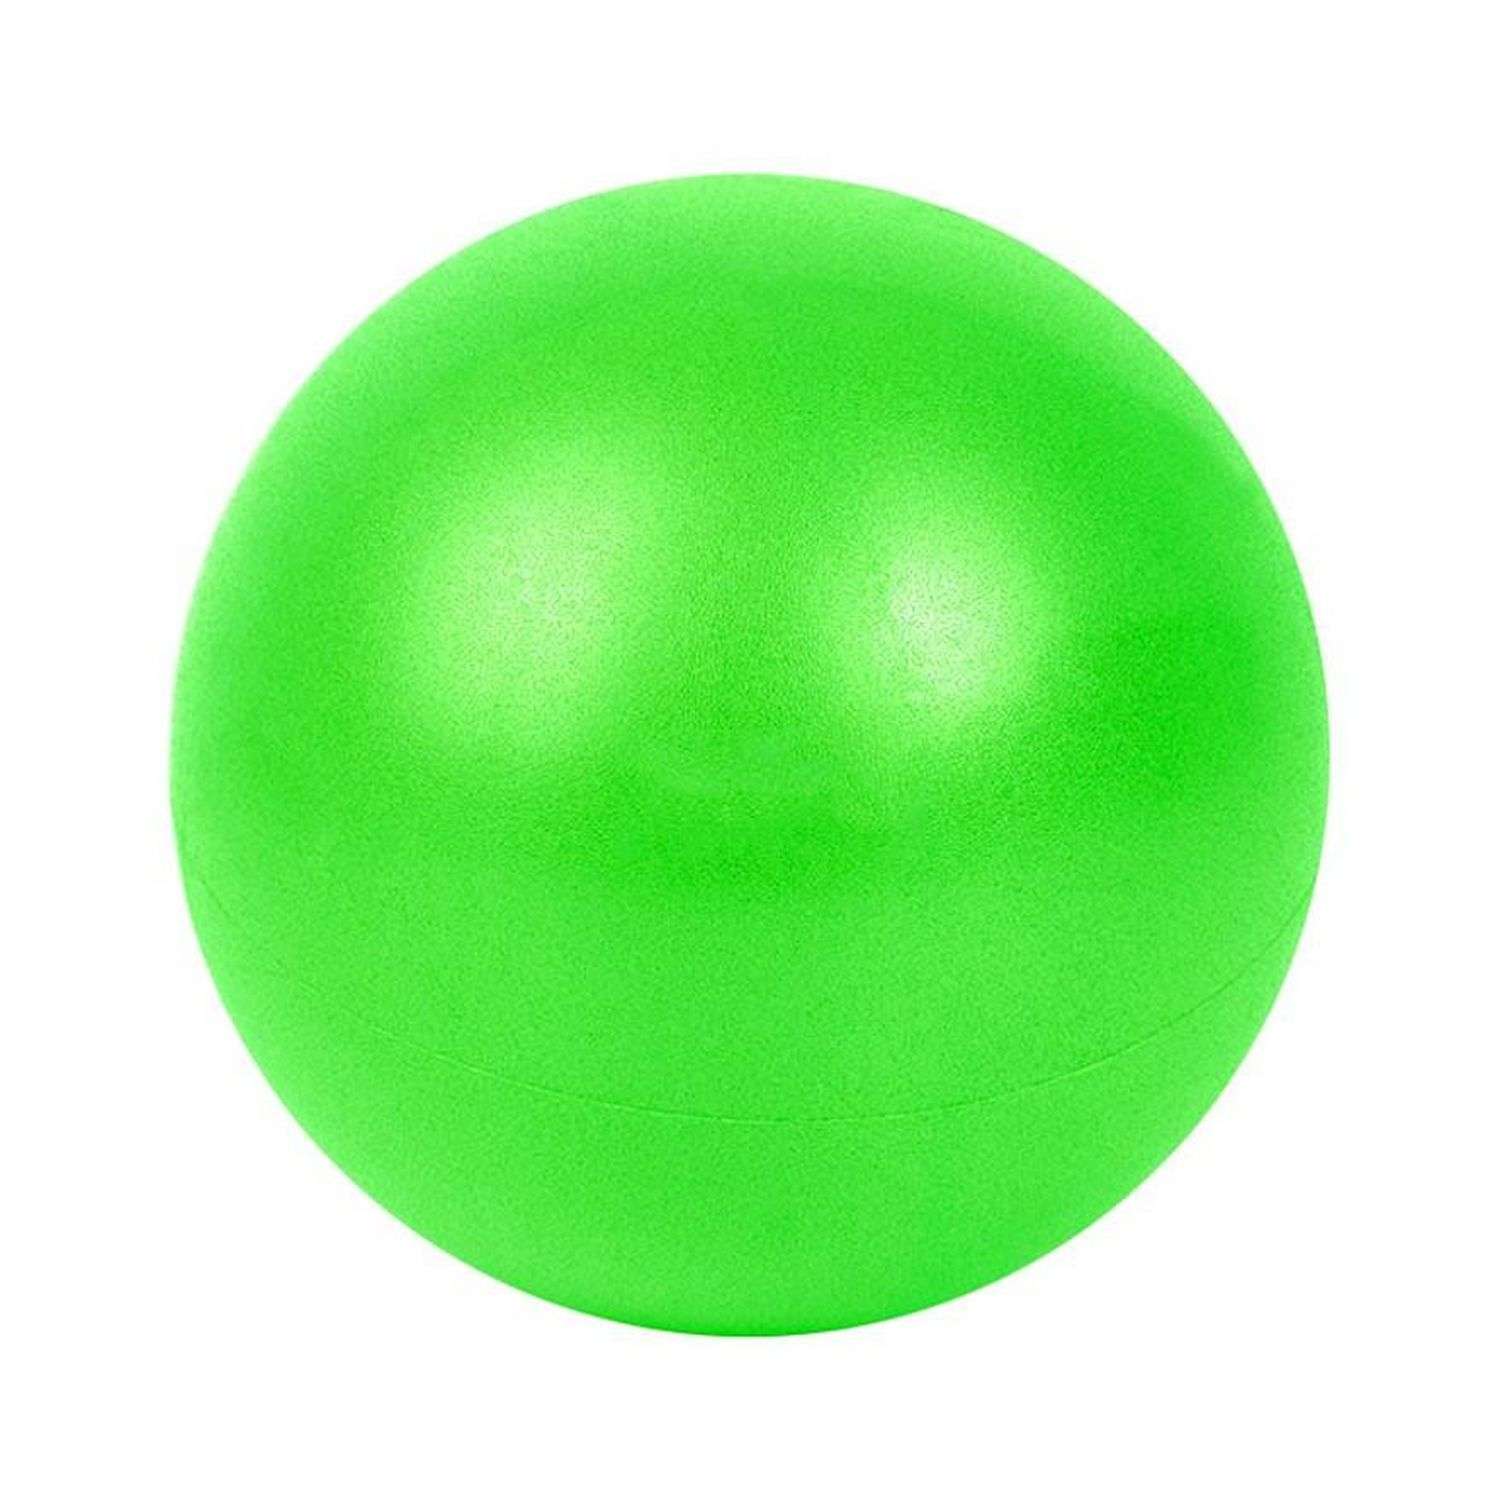 Мяч для йоги и пилатеса Beroma с антивзрывным эффектом 25 см зеленый - фото 1